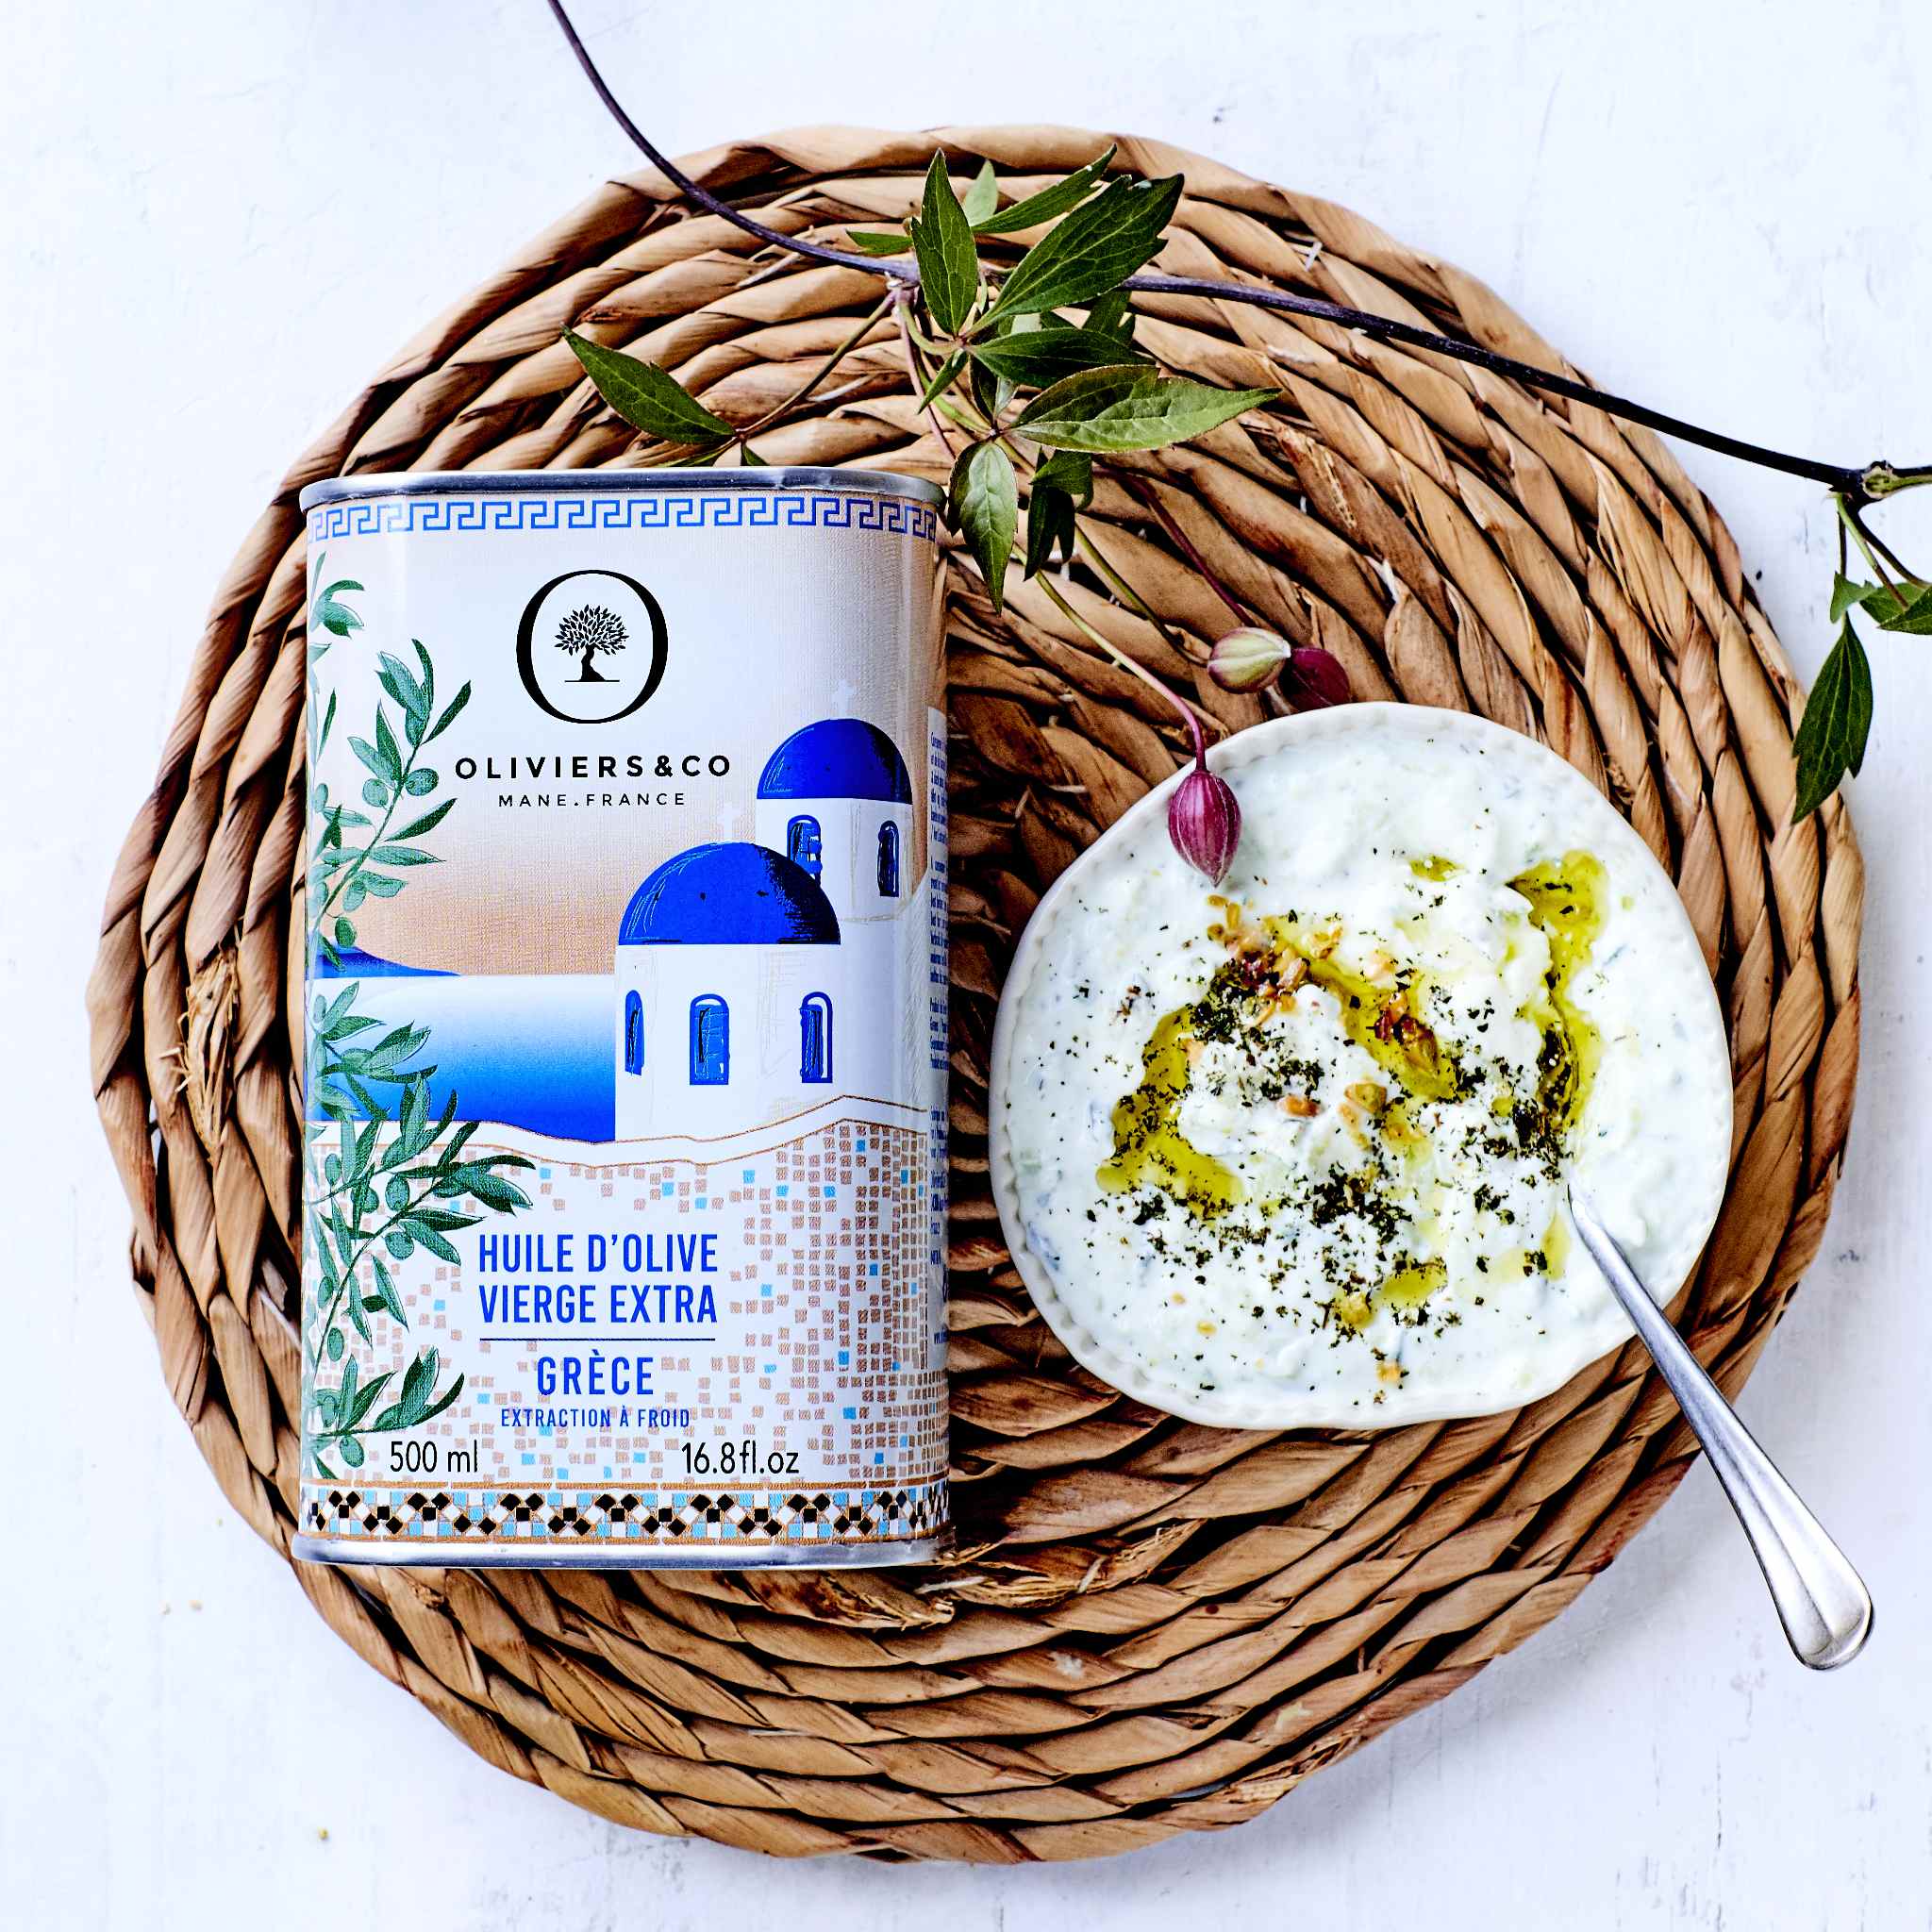 Klassisk græsk ekstra jomfru olivenolie i smuk dåse fra Oliviers & Co